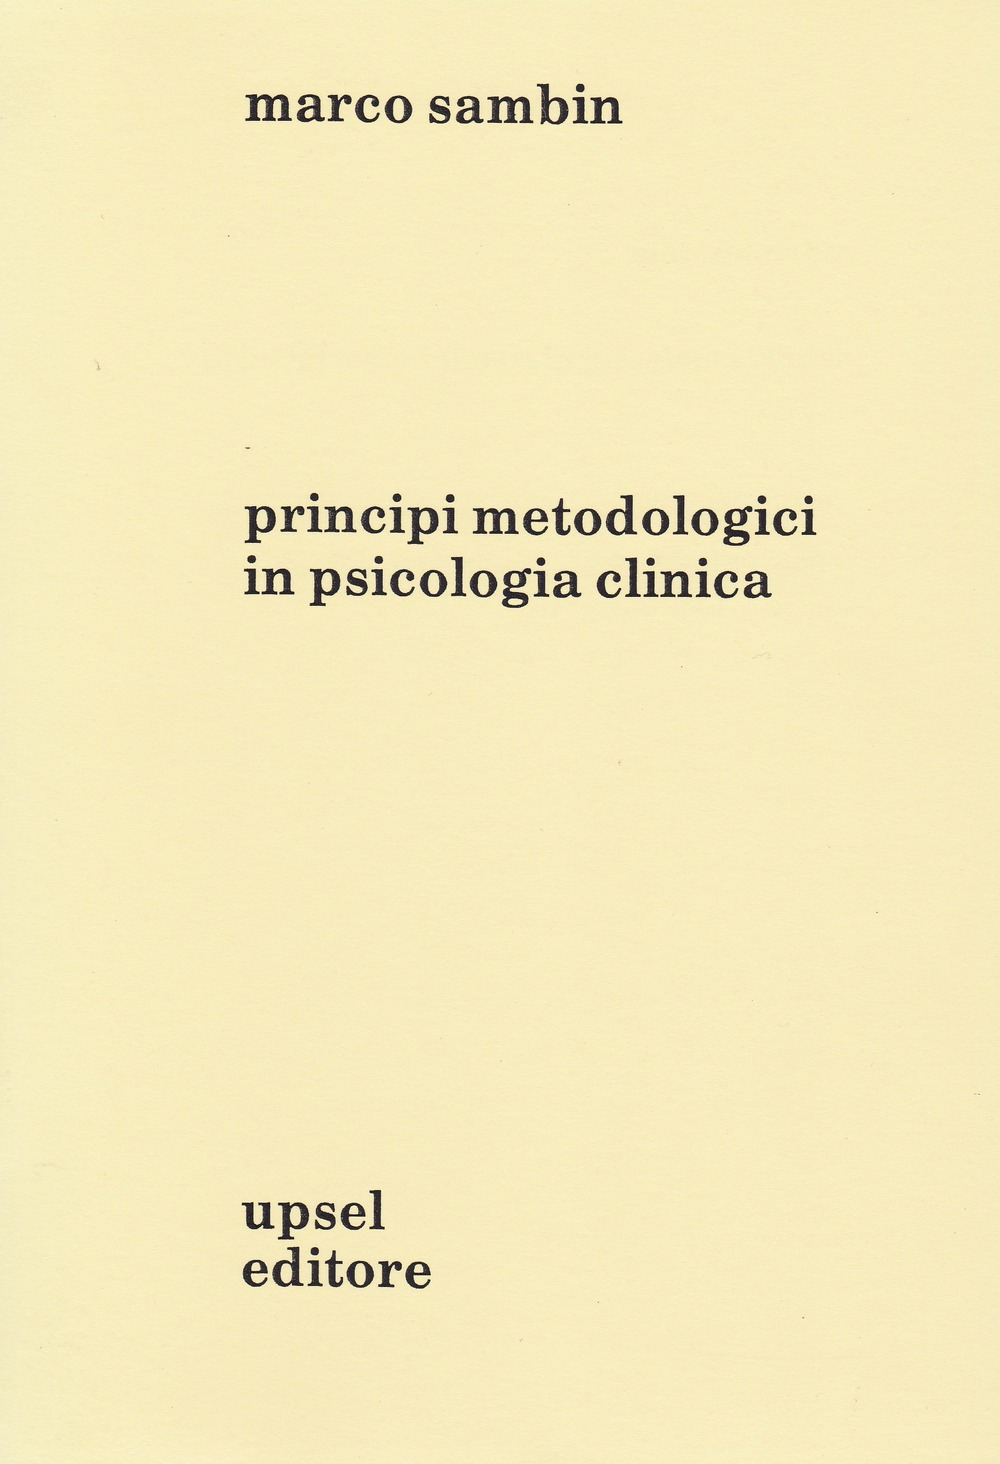 Principi metodologici in psicologia clinica